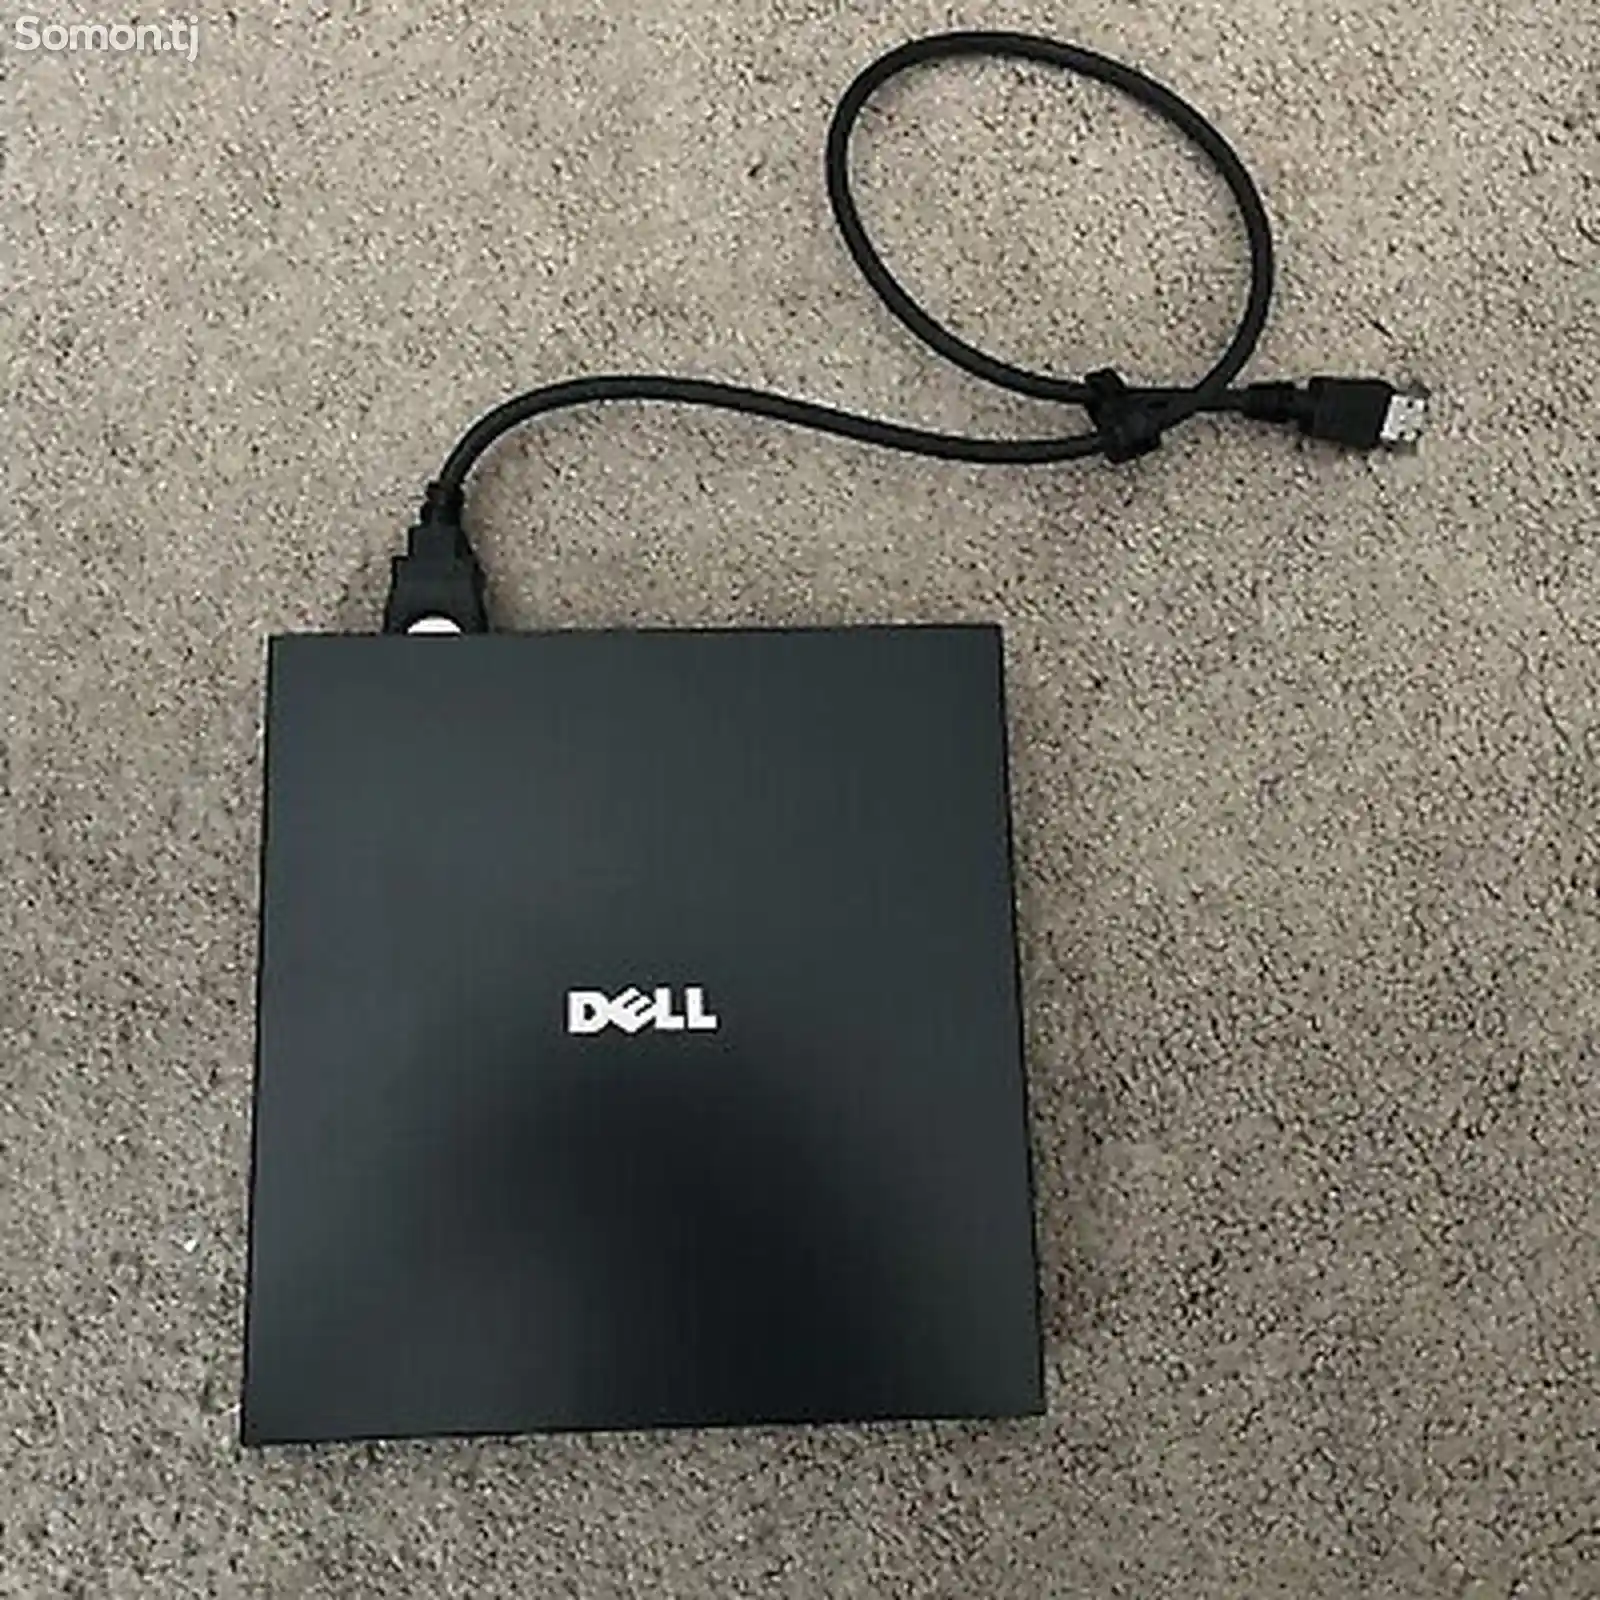 Внешний дисковод Dell-1